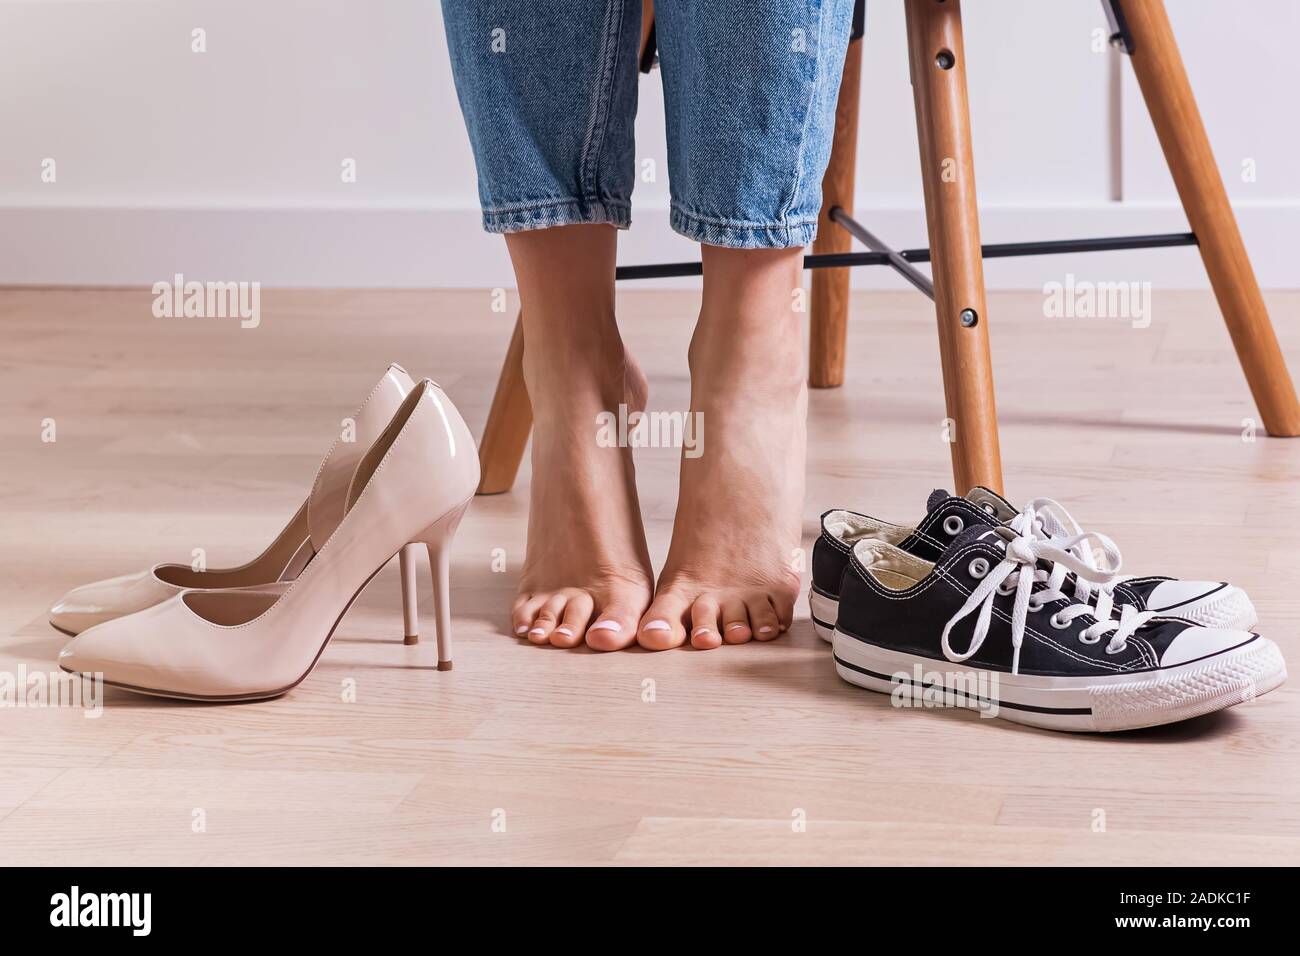 Frau barfuß und zwei Paar Schuhe Stockfotografie - Alamy